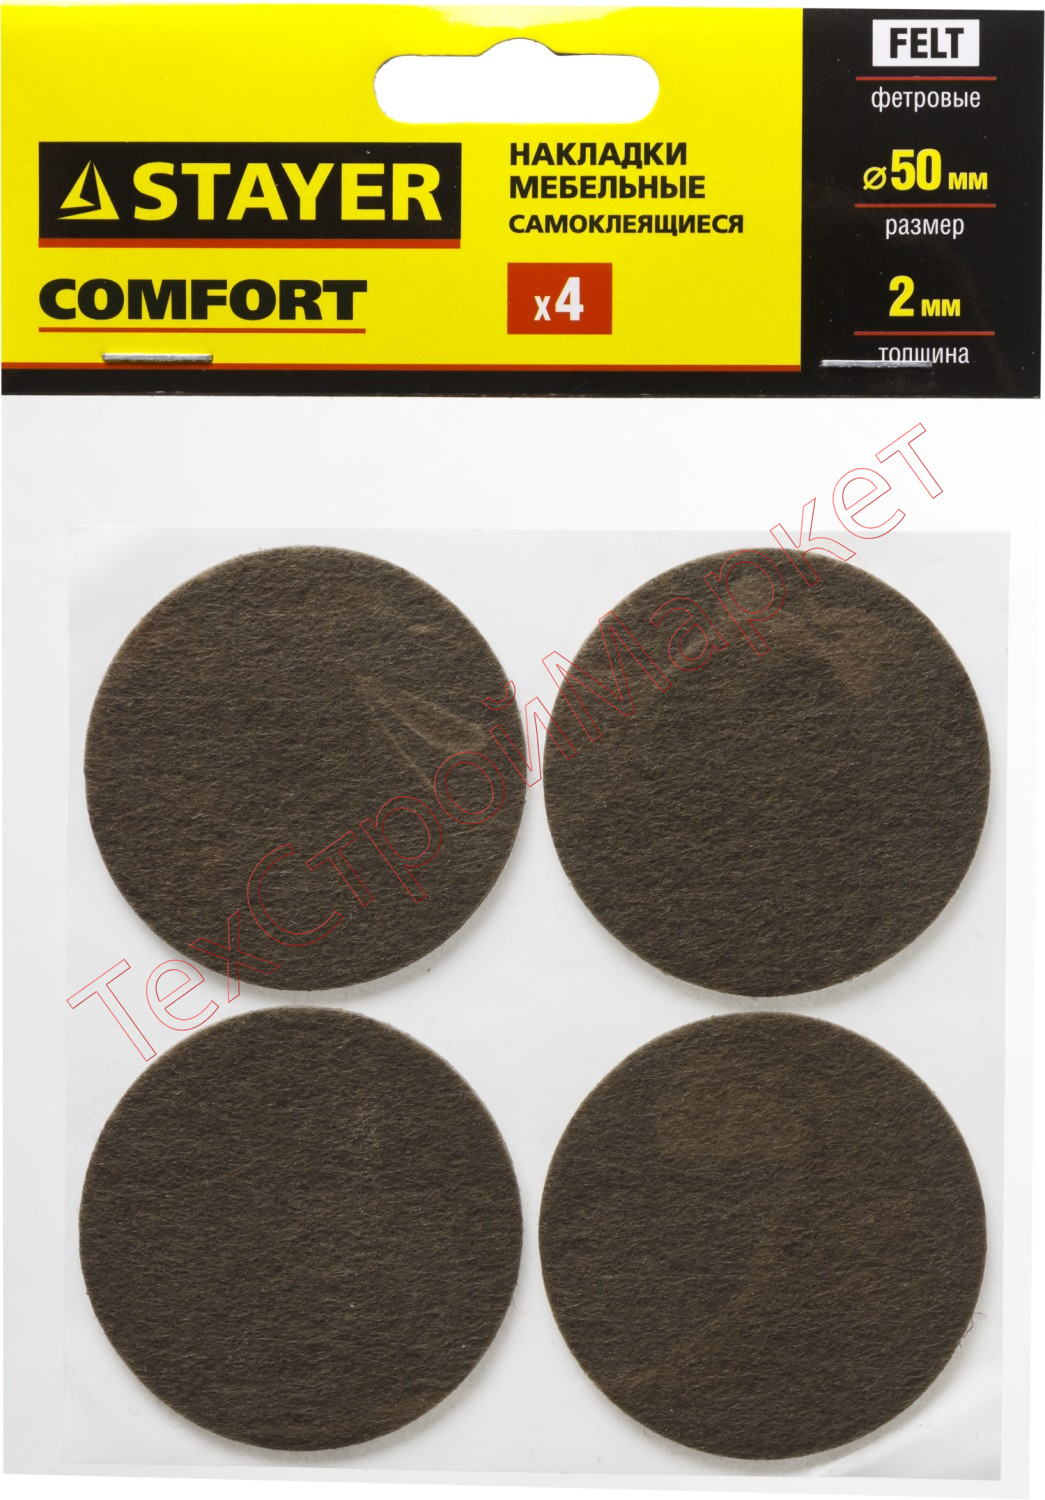 Накладки STAYER "COMFORT" на мебельные ножки, самоклеящиеся, фетровые, коричневые, круглые - диаметр 50 мм, 4 шт